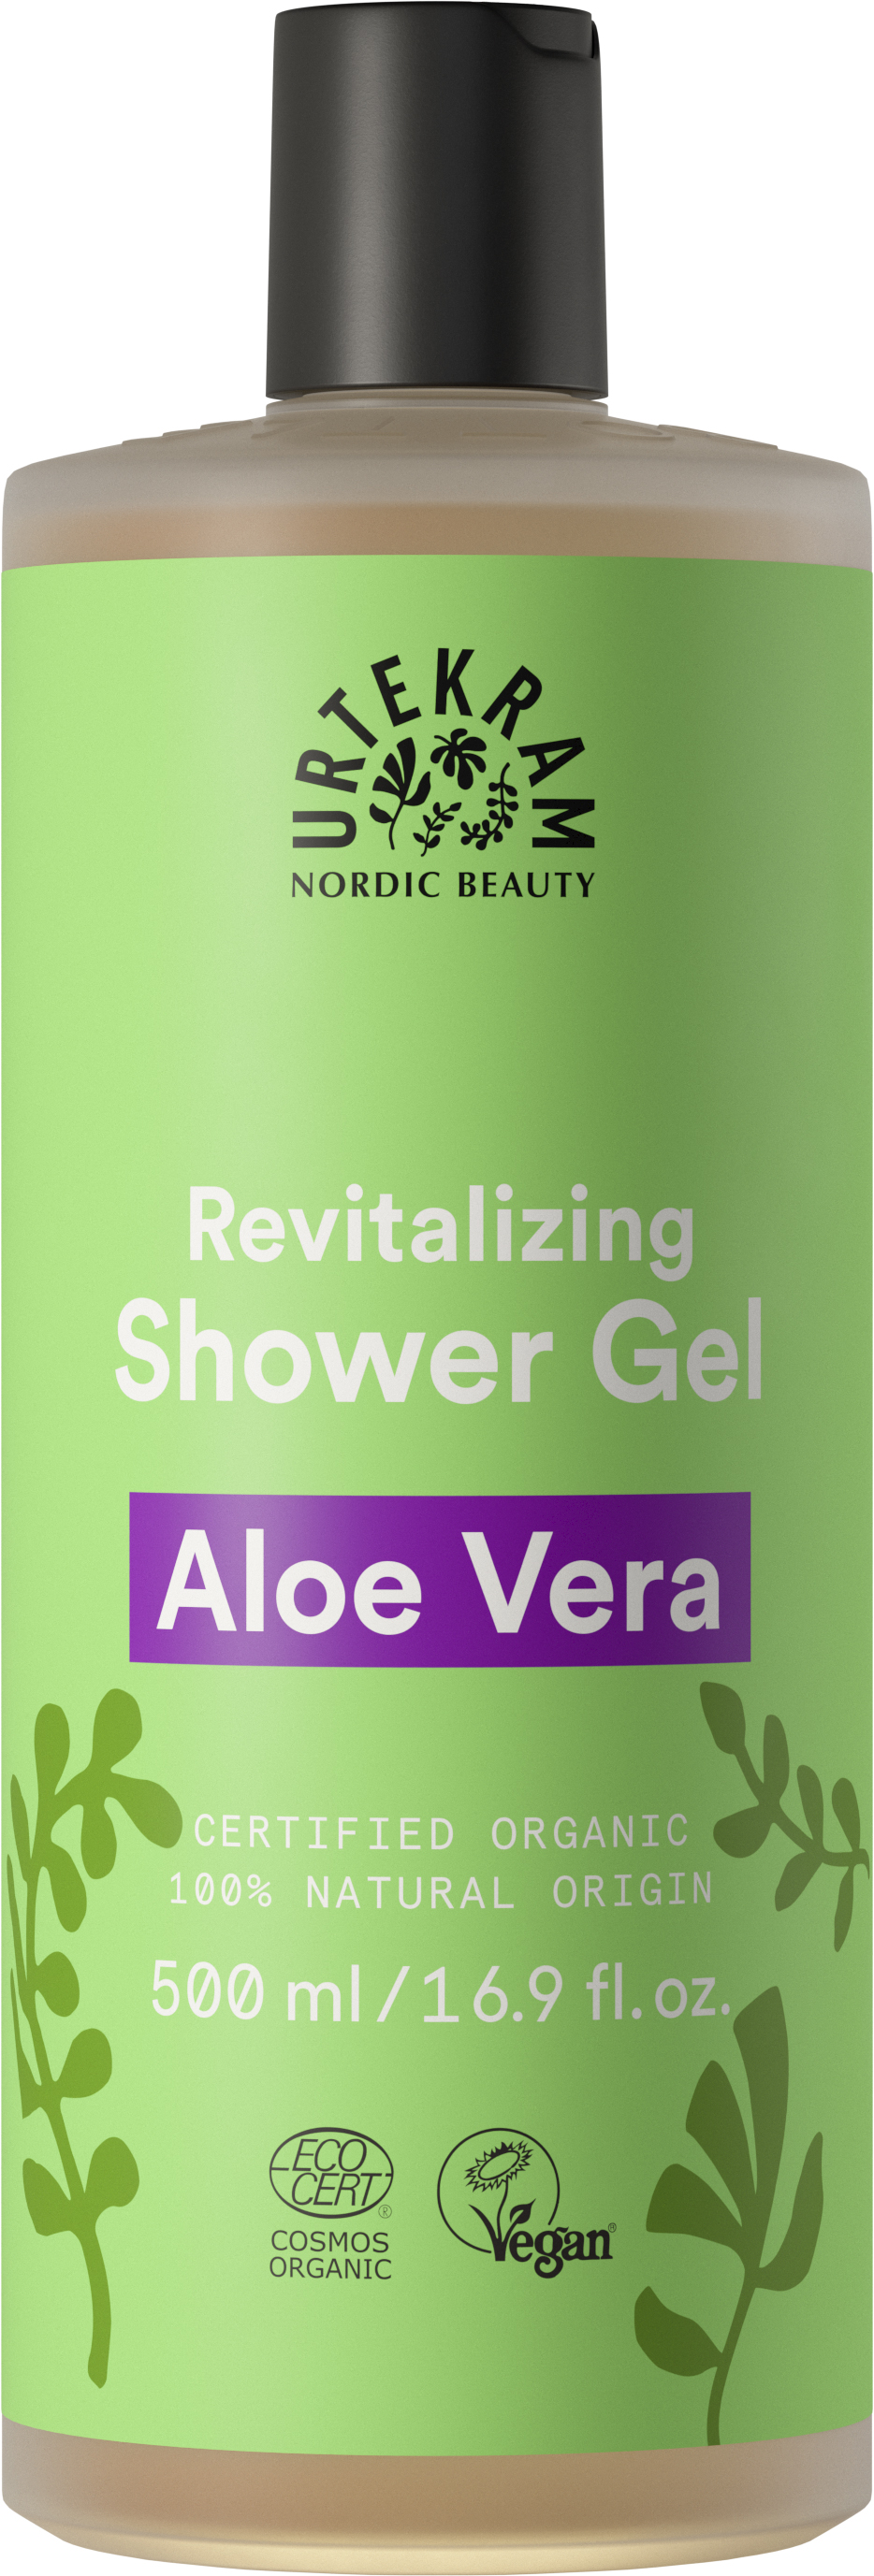 Urtekram Revitalizing Shower Gel Aloe Vera - Suihkugeeli 500 ml